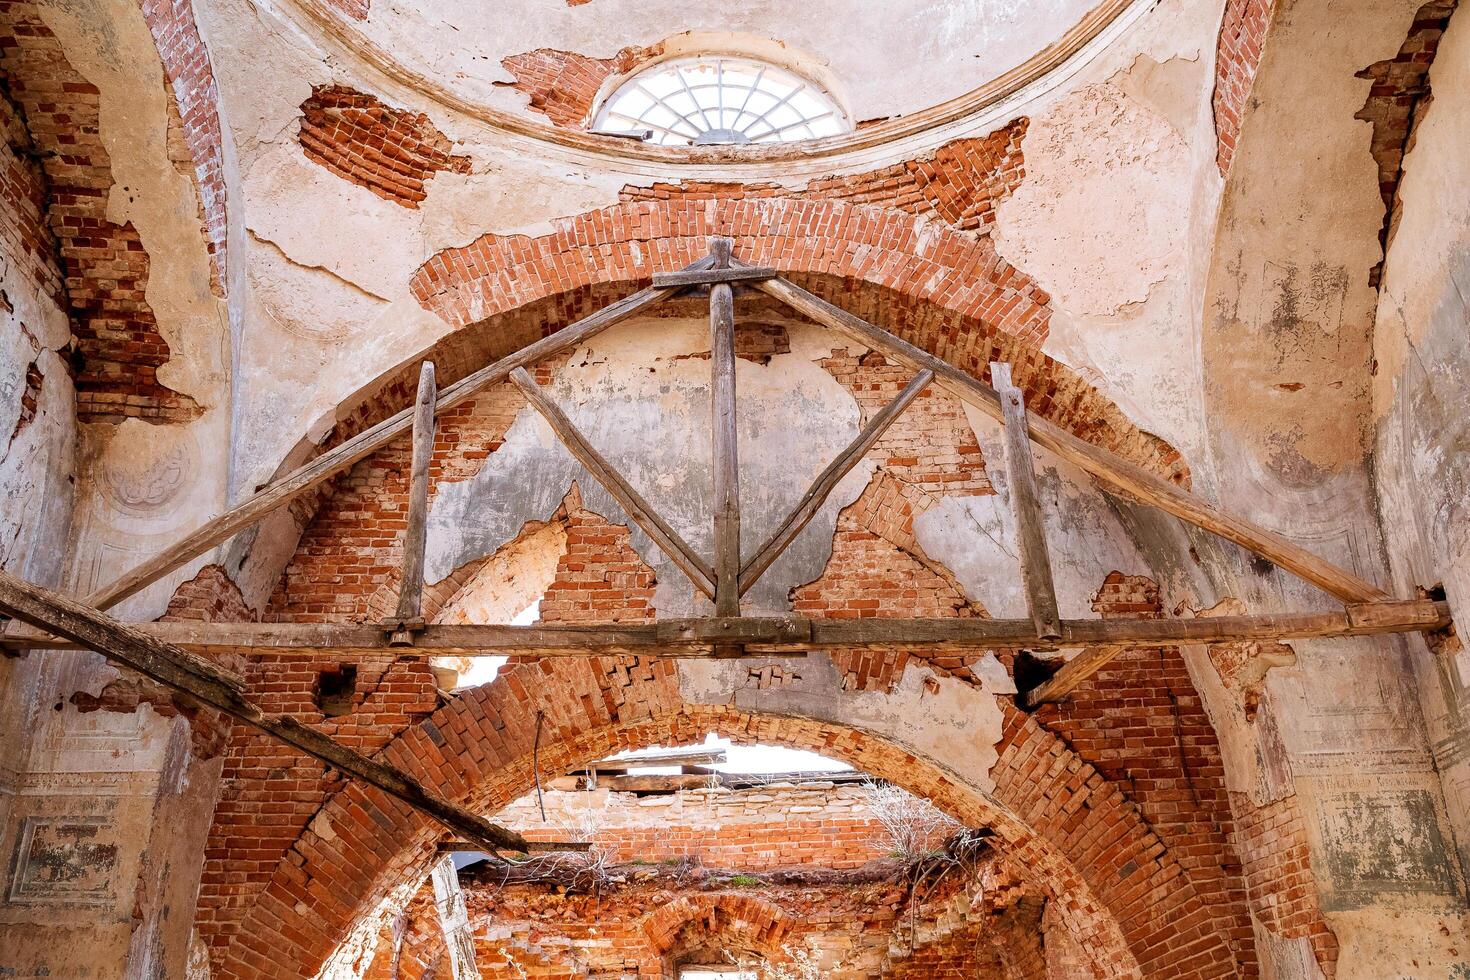 das zerstört Gewölbe von das uralt Tempel, das orthodox Kirche sind das Ruinen von das zuletzt Jahrhundert, das Innere von das Kirche Kloster, das Wände sind gemacht von rot Ziegel, das Gips hat zusammengebrochen. foto